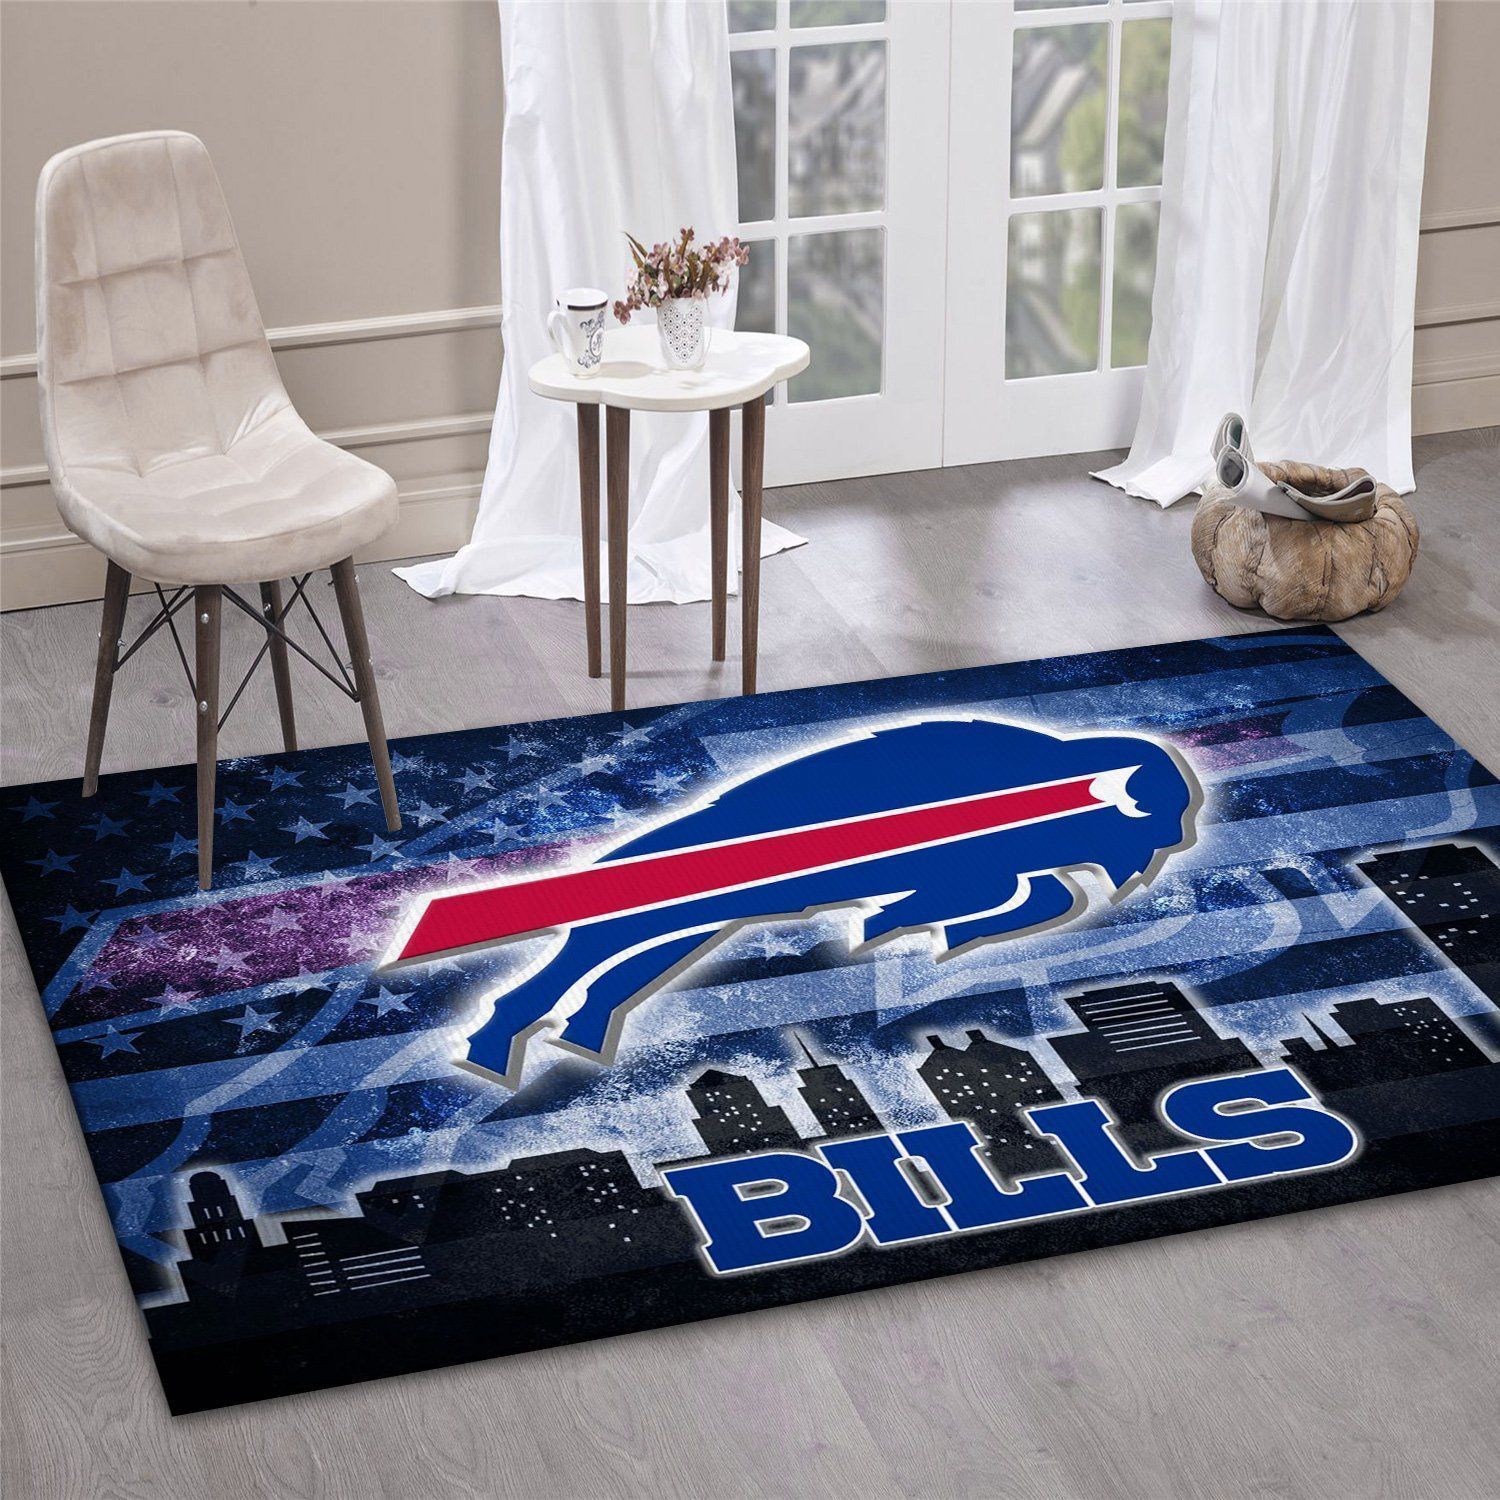 Buffalo Bills NFL Area Rug Bedroom Rug US Gift Decor - Indoor Outdoor Rugs 3